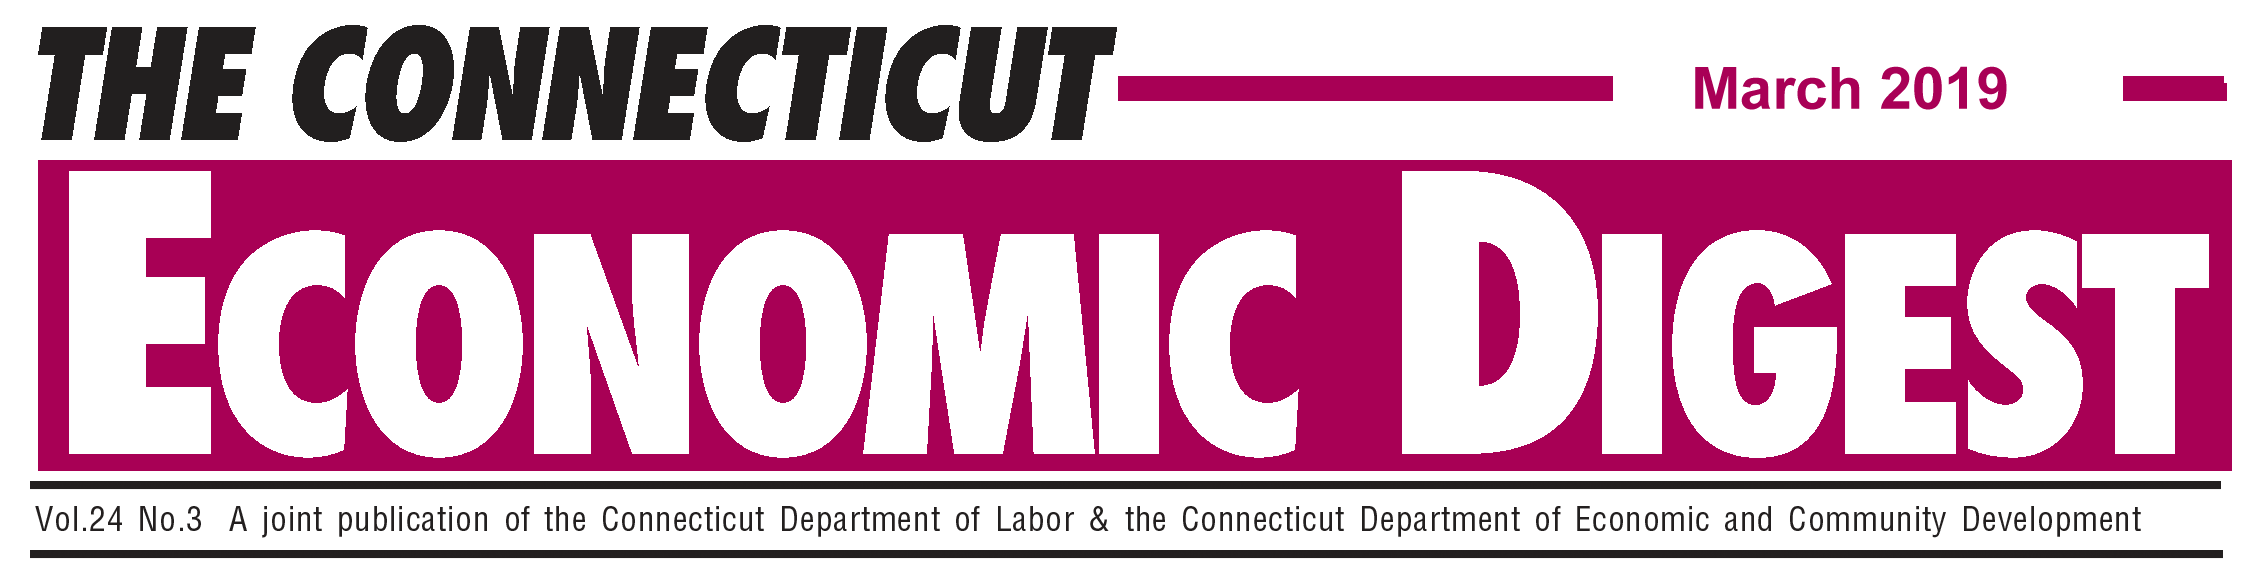 March 2019 Connecticut Economic Digest